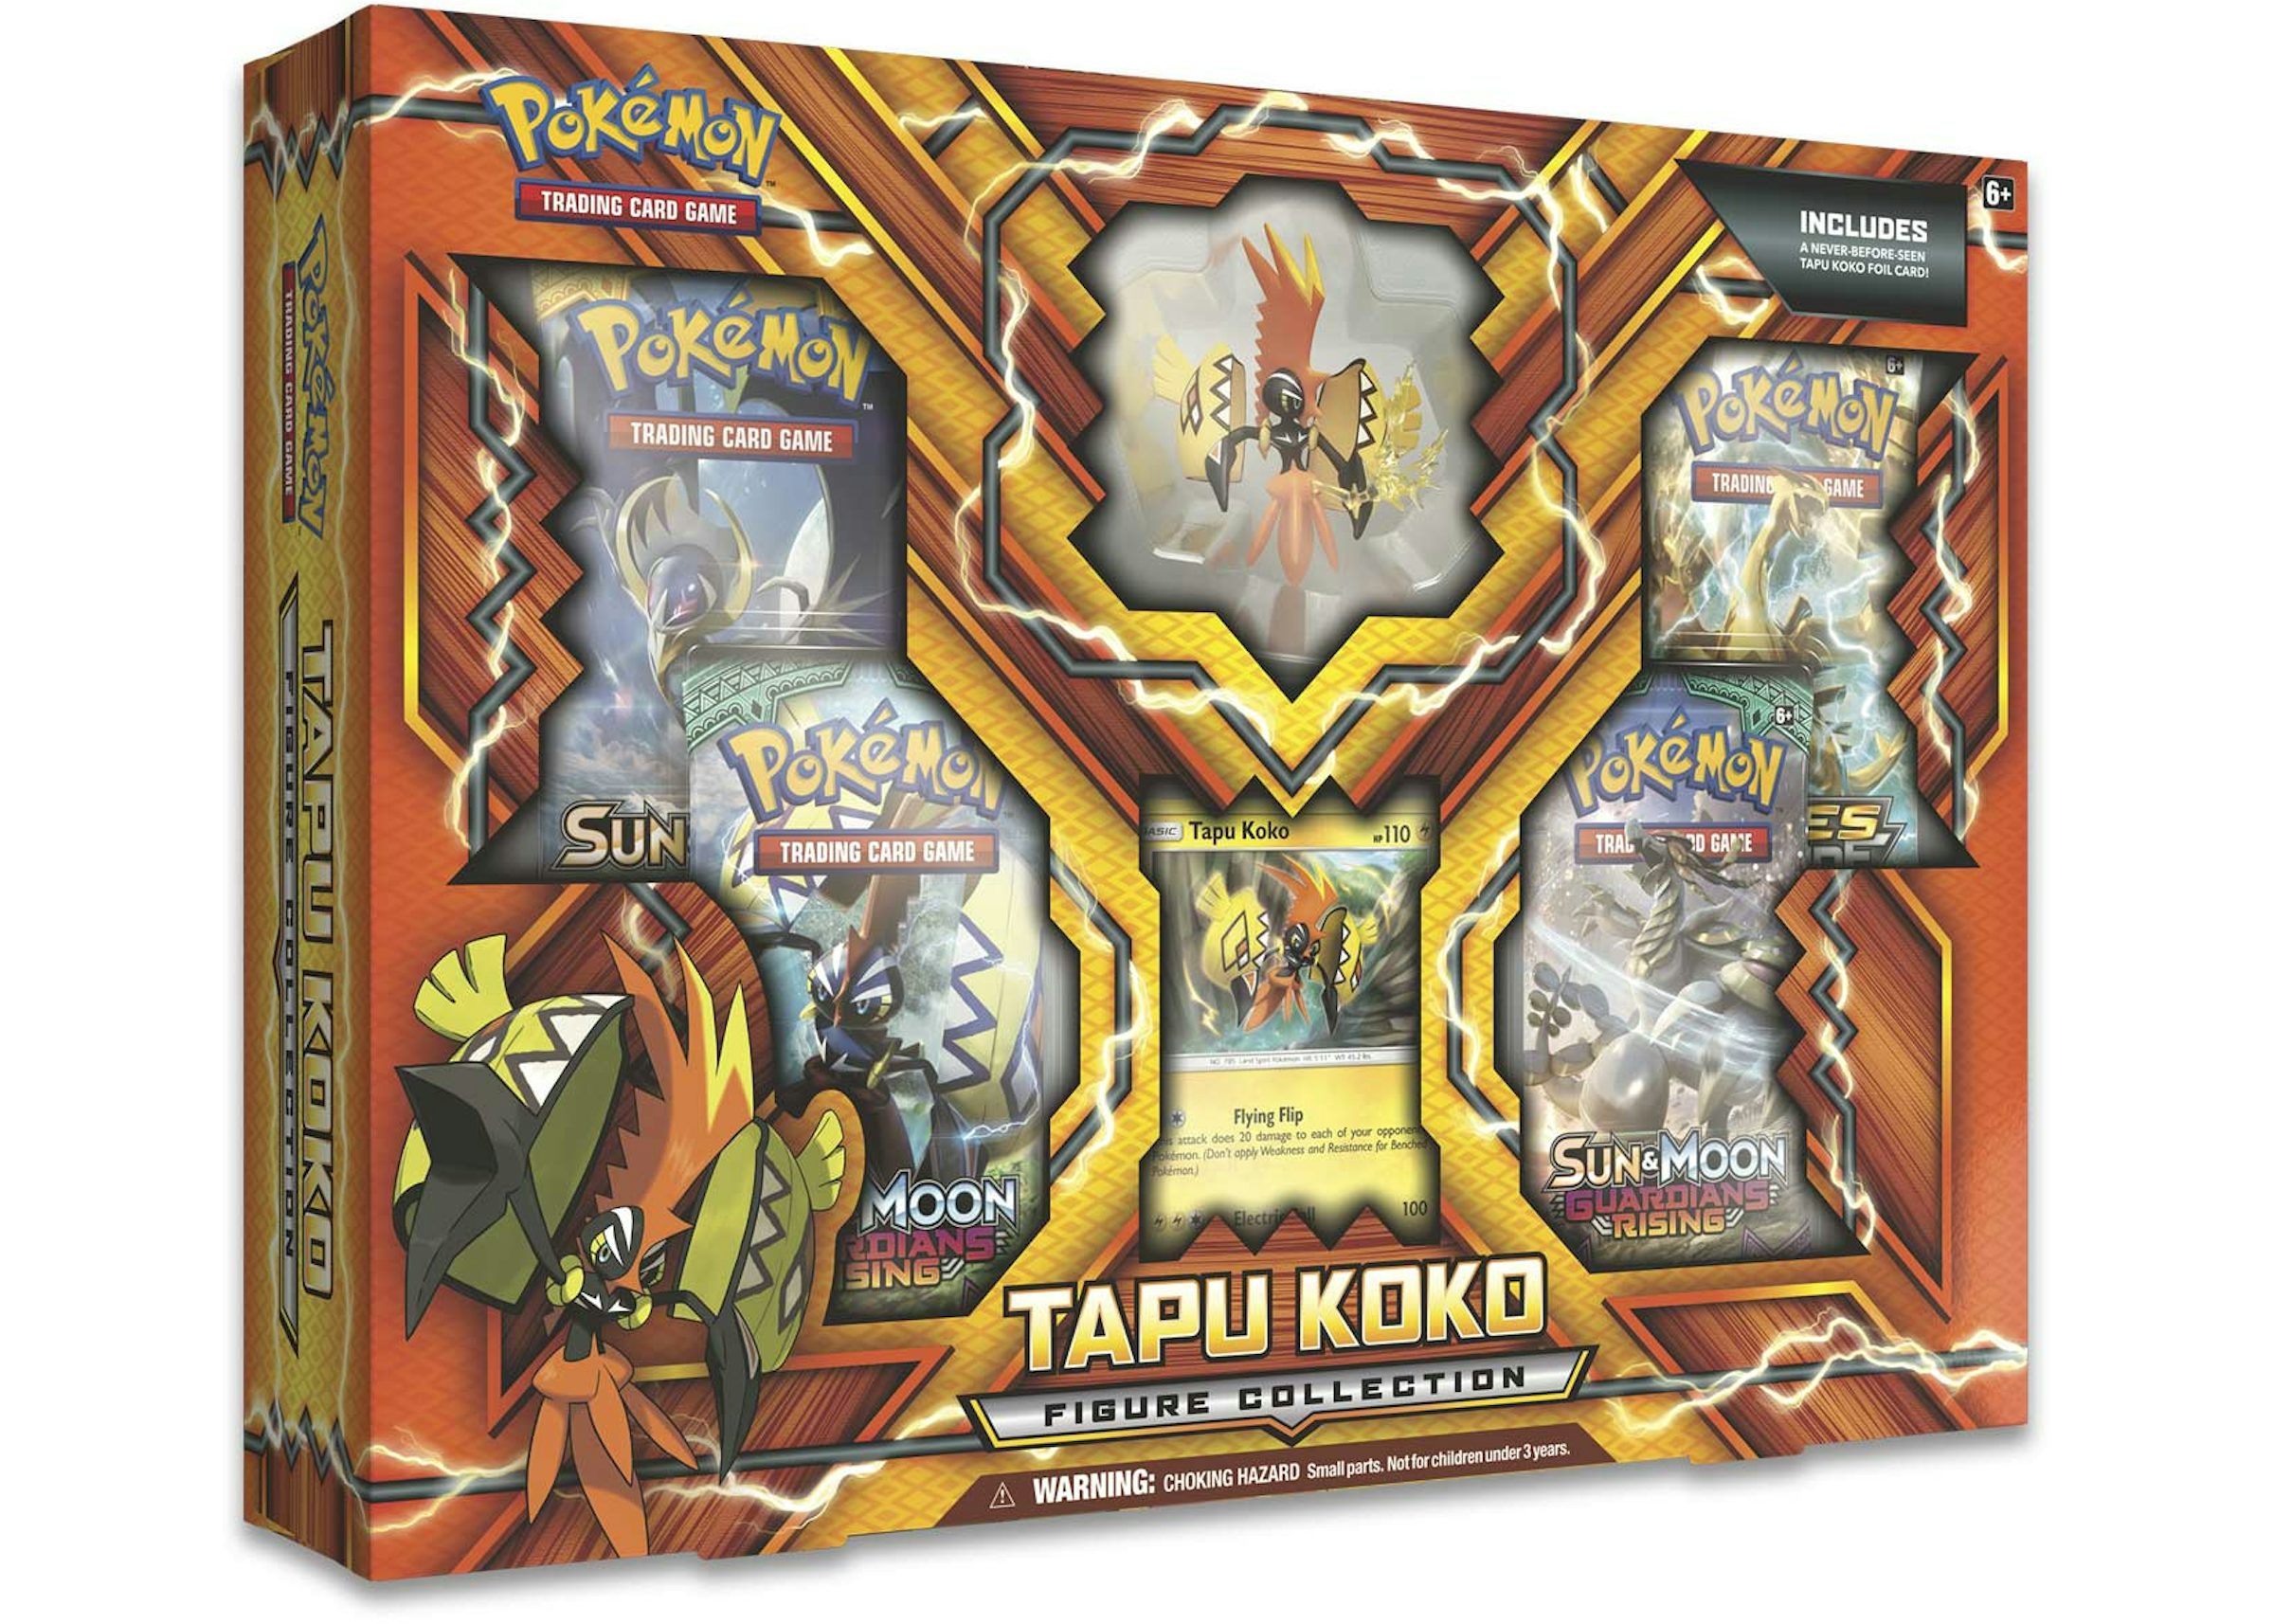 Pokémon TCG: Shiny Tapu Koko-GX Box